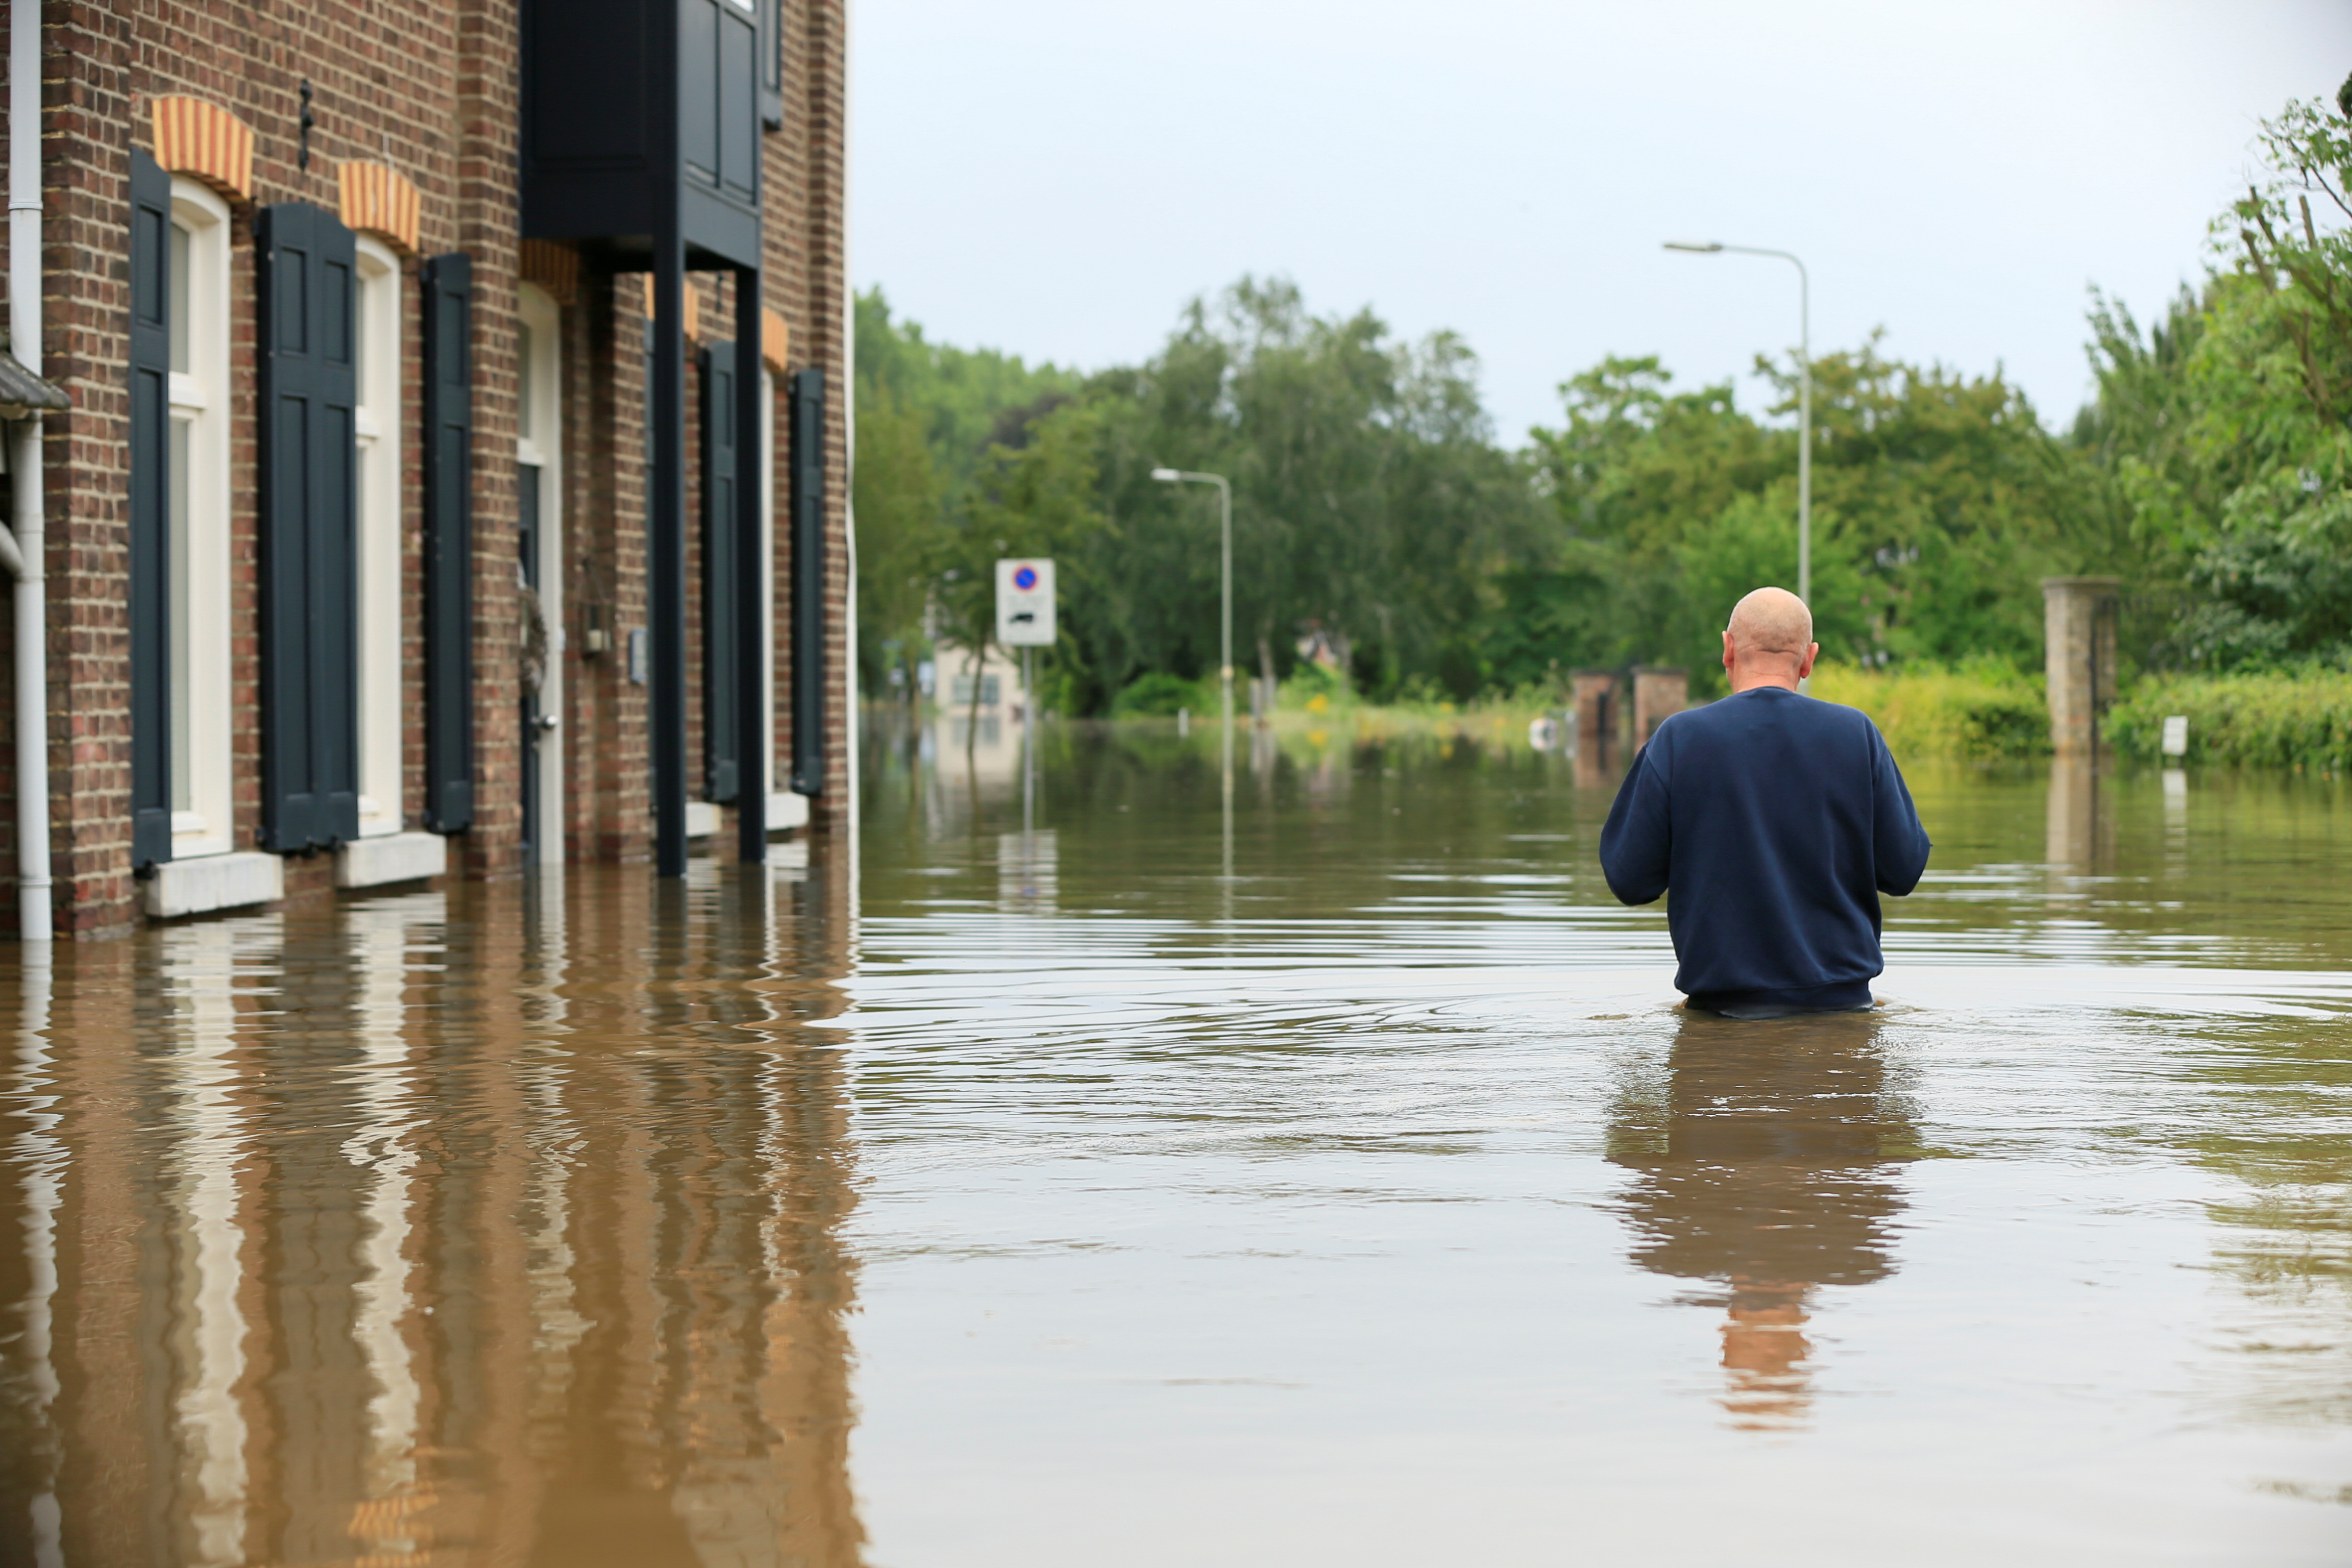 Una persona camina en plena inundación en Guelle, Países Bajos